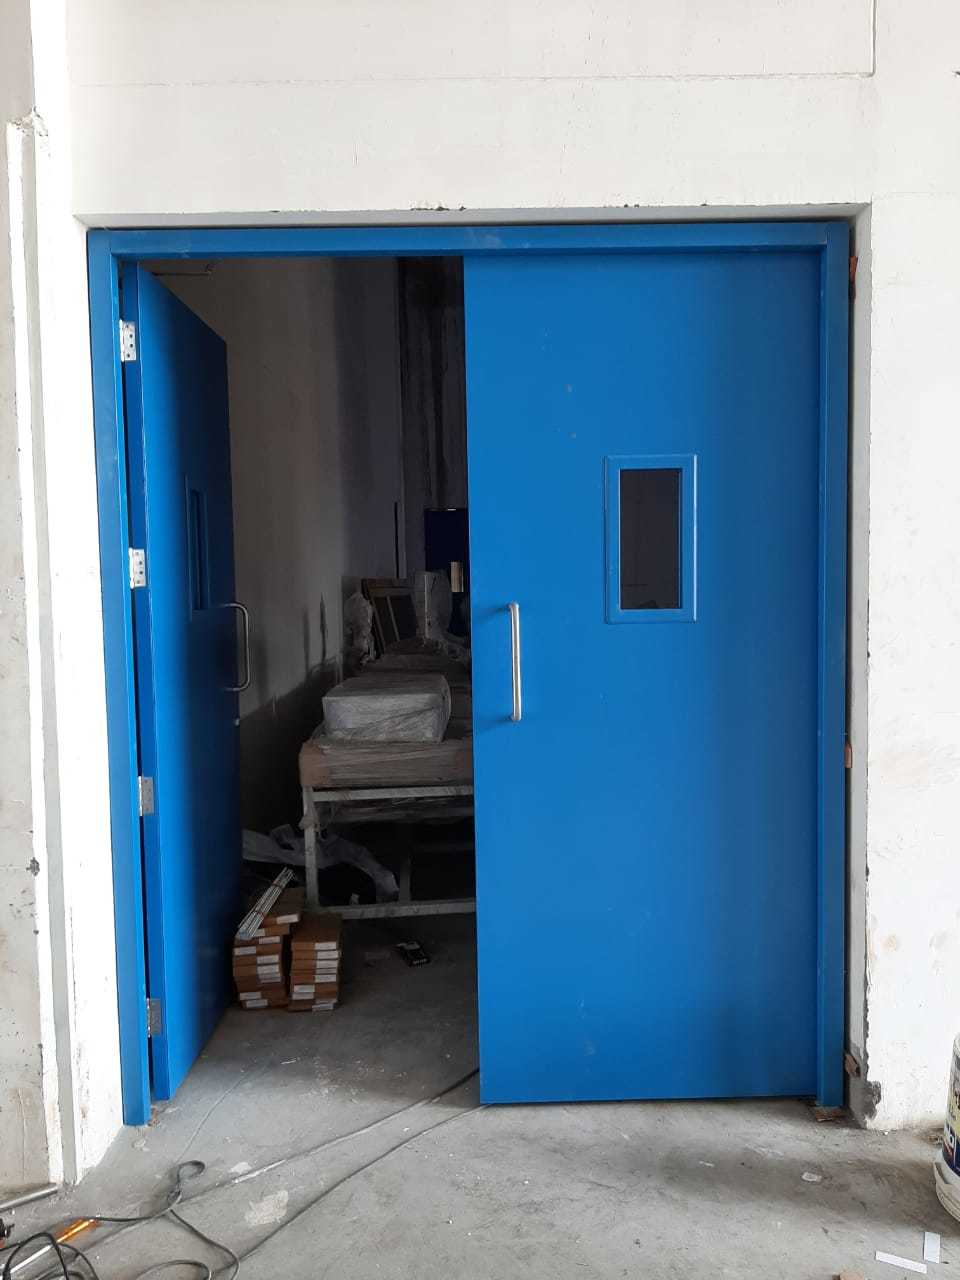 Scientific Clean Room Door